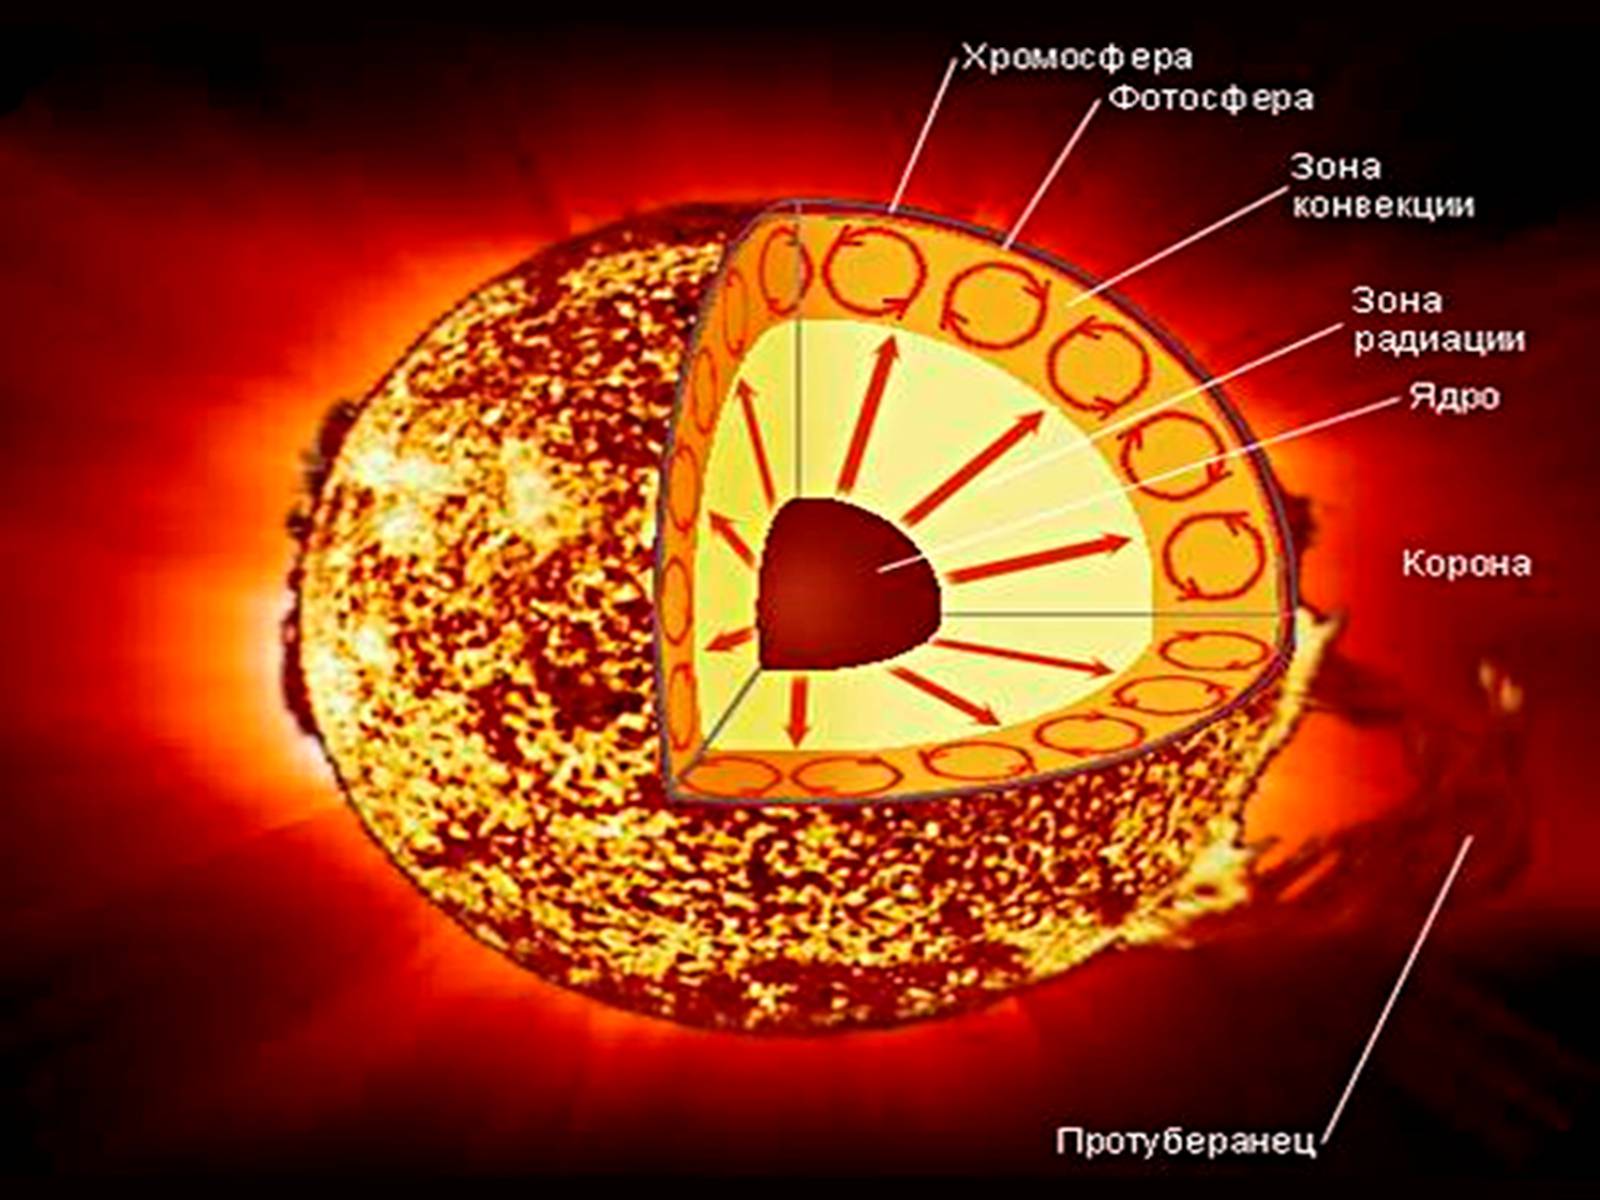 Назовите слои солнечной атмосферы. Строение атмосферы солнца Фотосфера хромосфера Солнечная корона. Строение солнца хромосфера Фотосфера. Внутреннее строение солнца Фотосфера. Строение солнца схема.